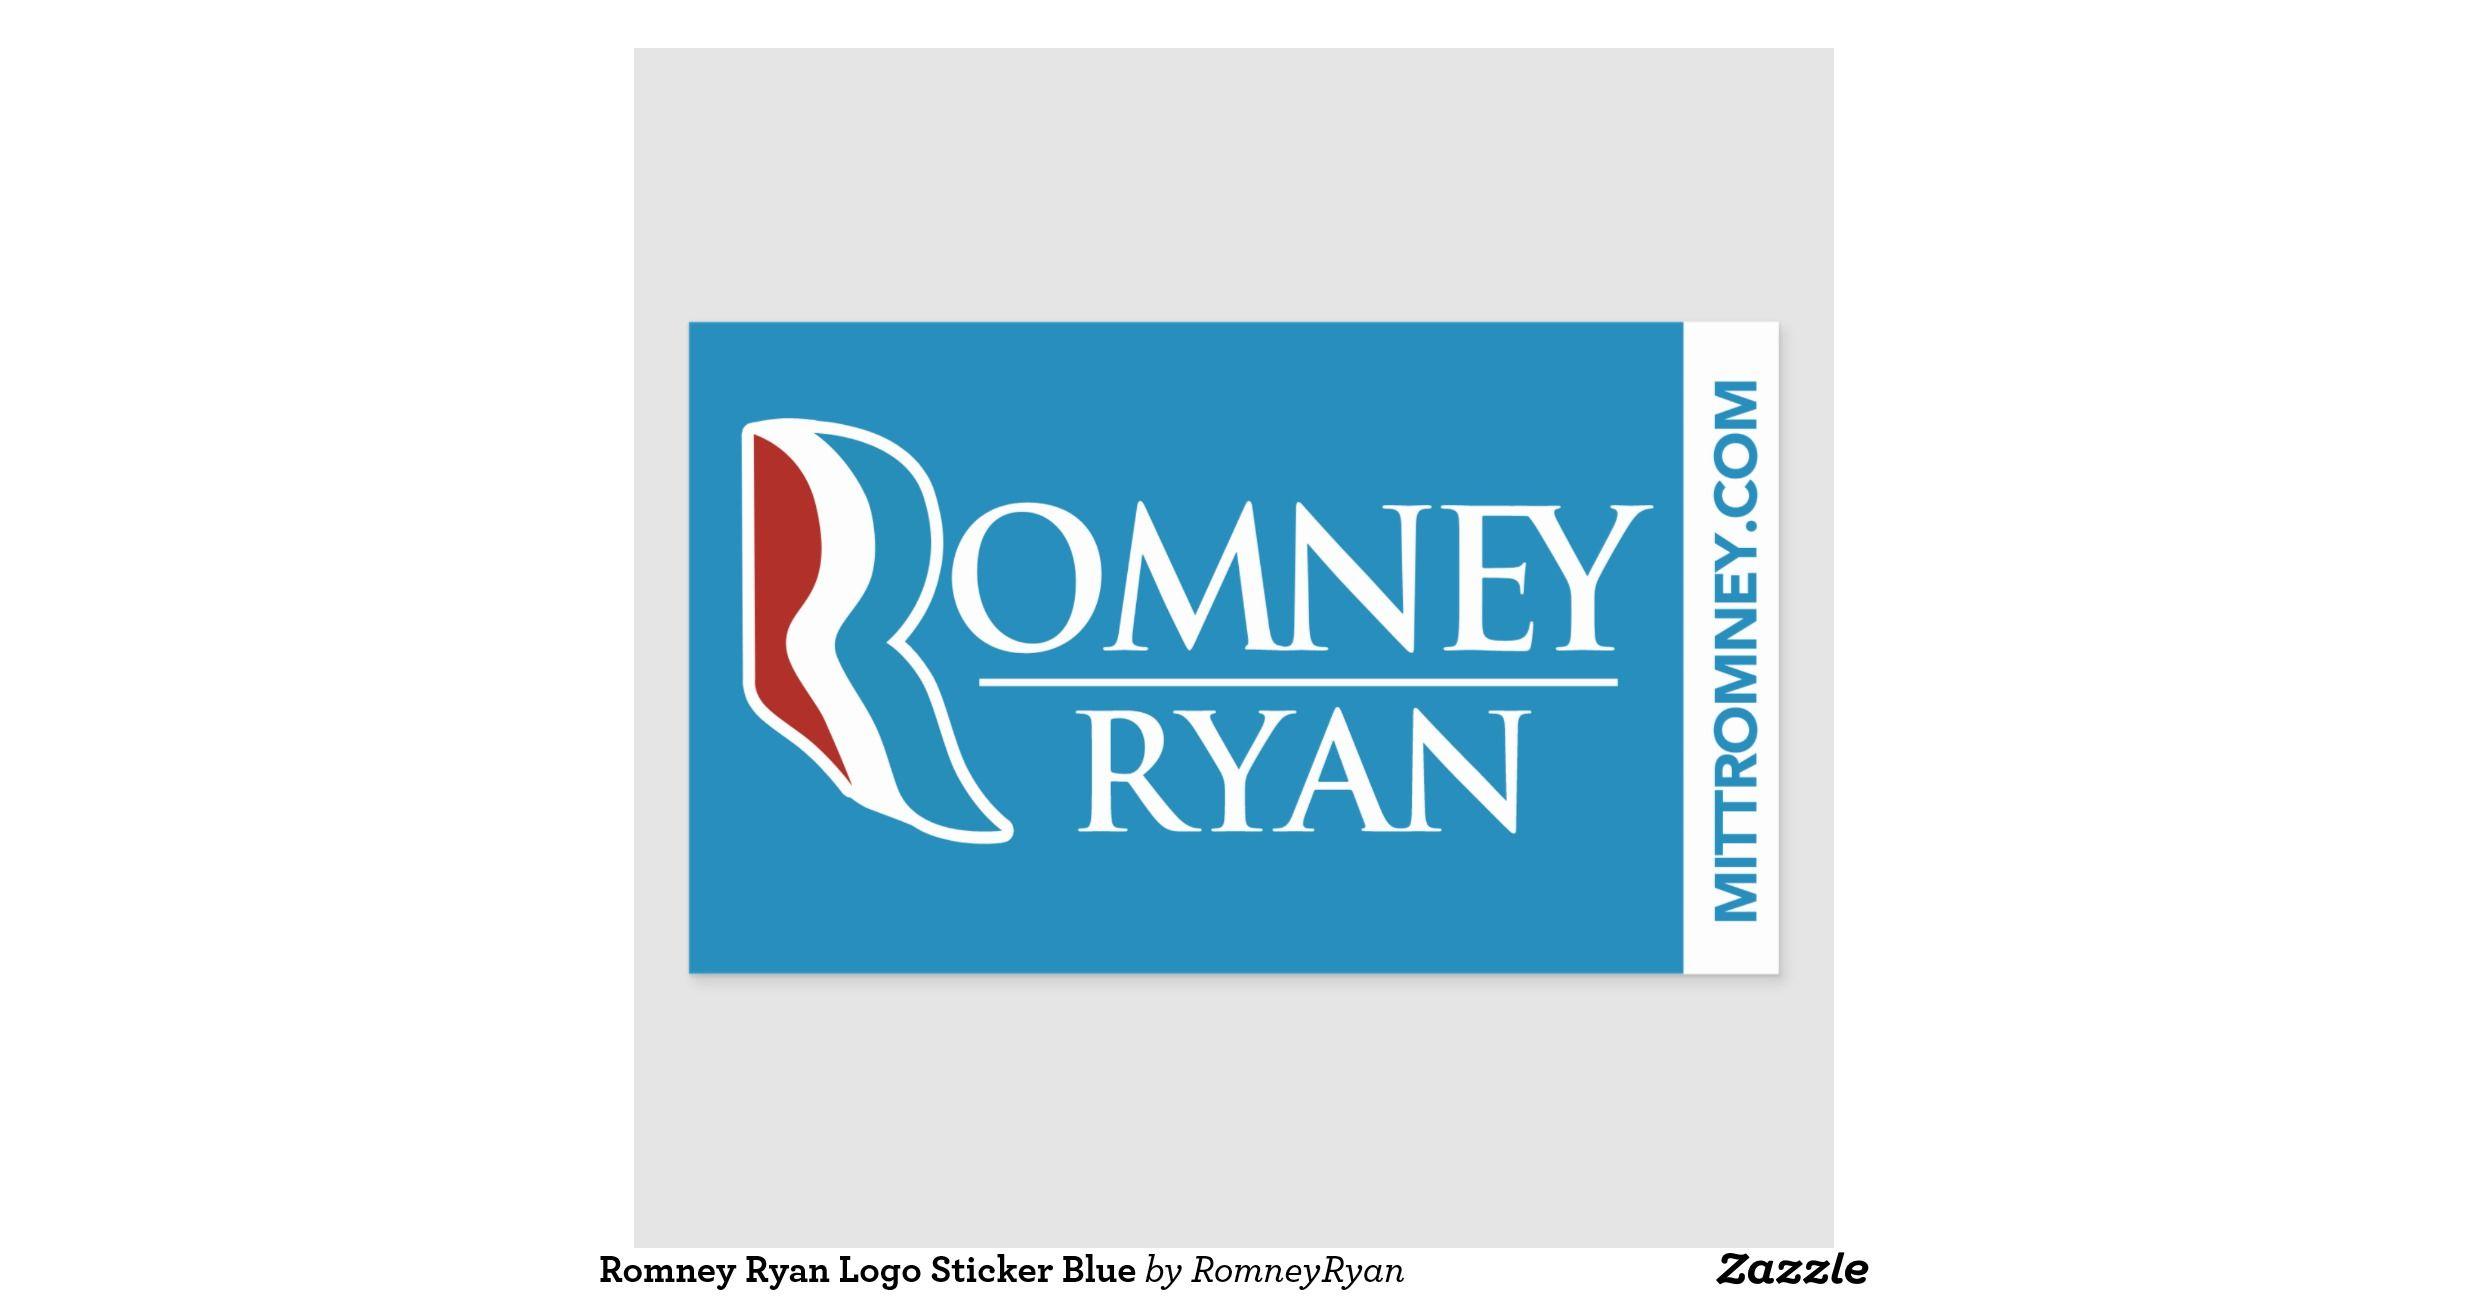 Romney Logo - Romney Ryan Logo